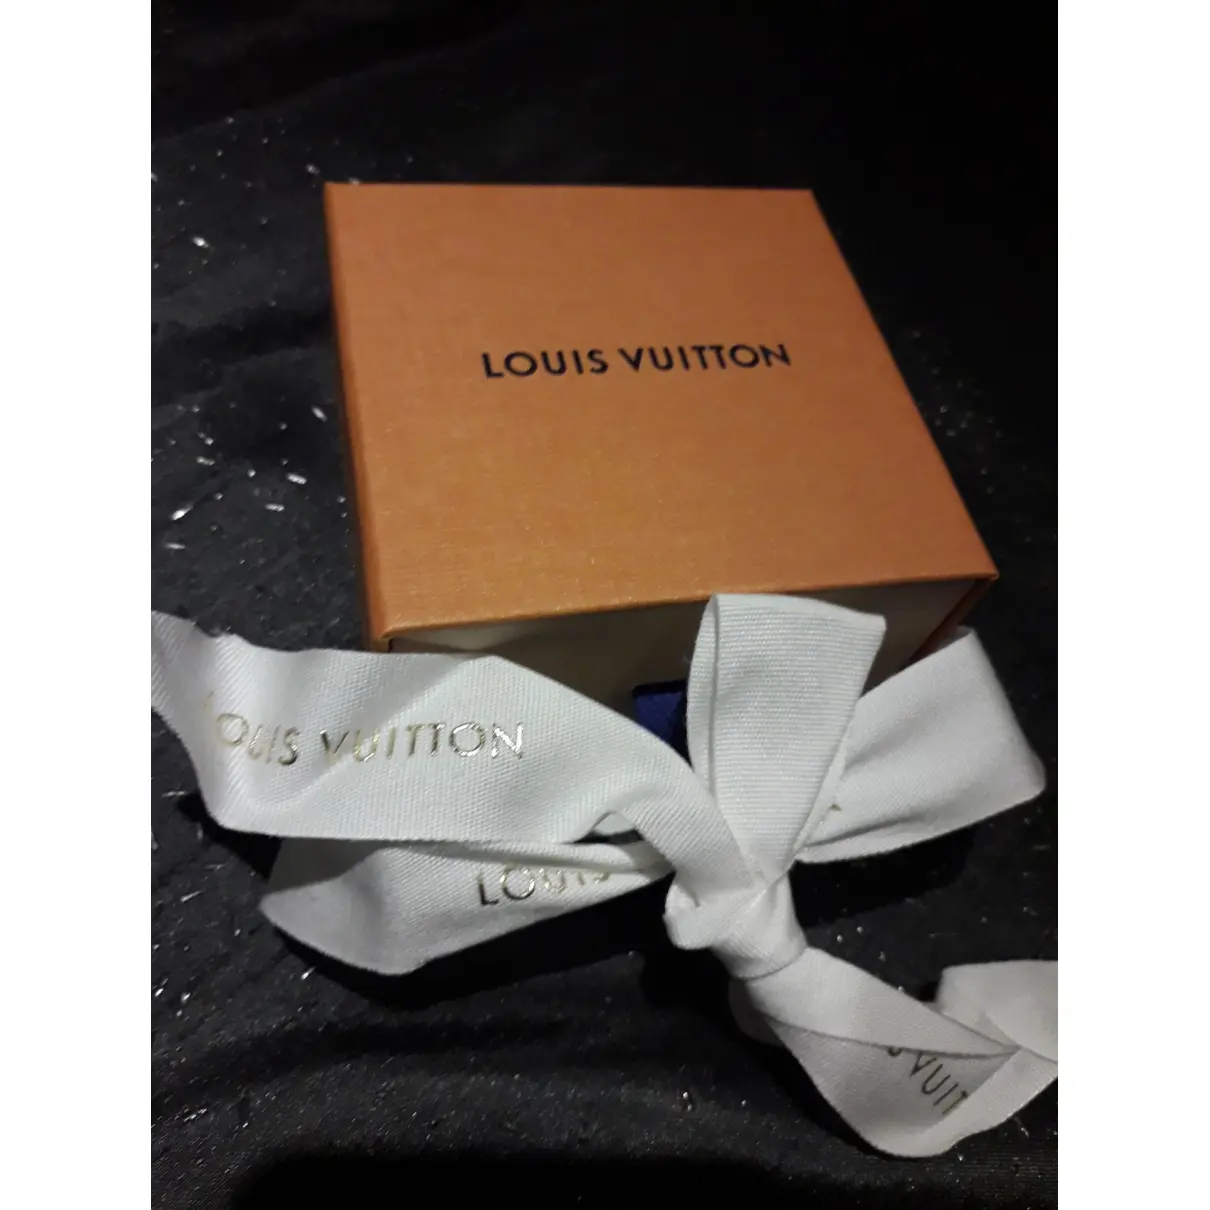 Buy Louis Vuitton Desk accessorie online